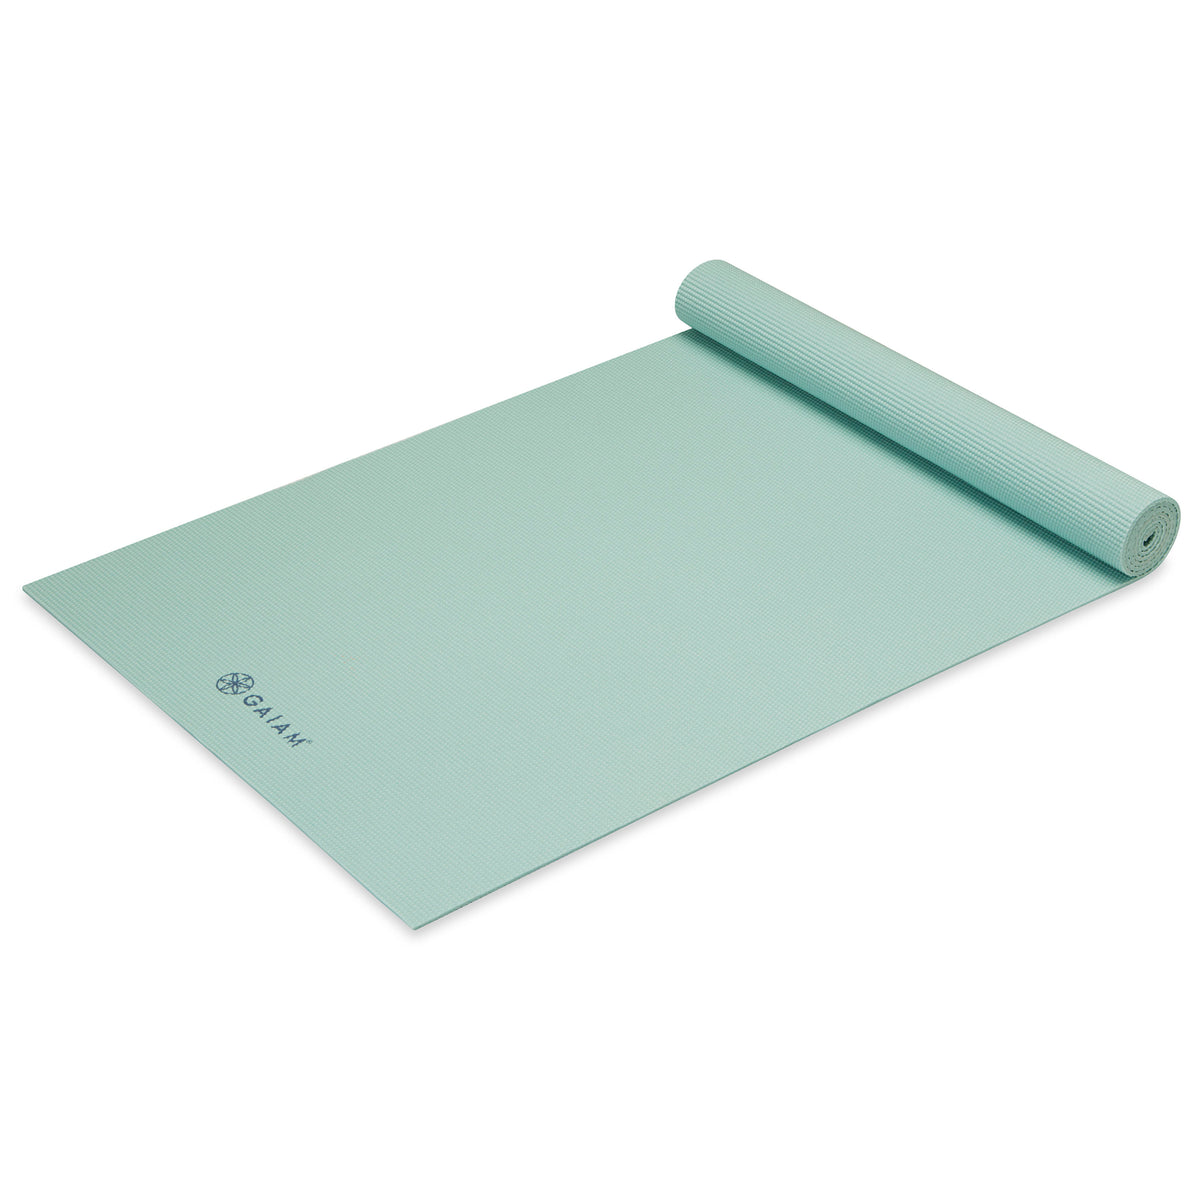 GAIAM 5 mm Classic Printed Yoga Mat, Buy online